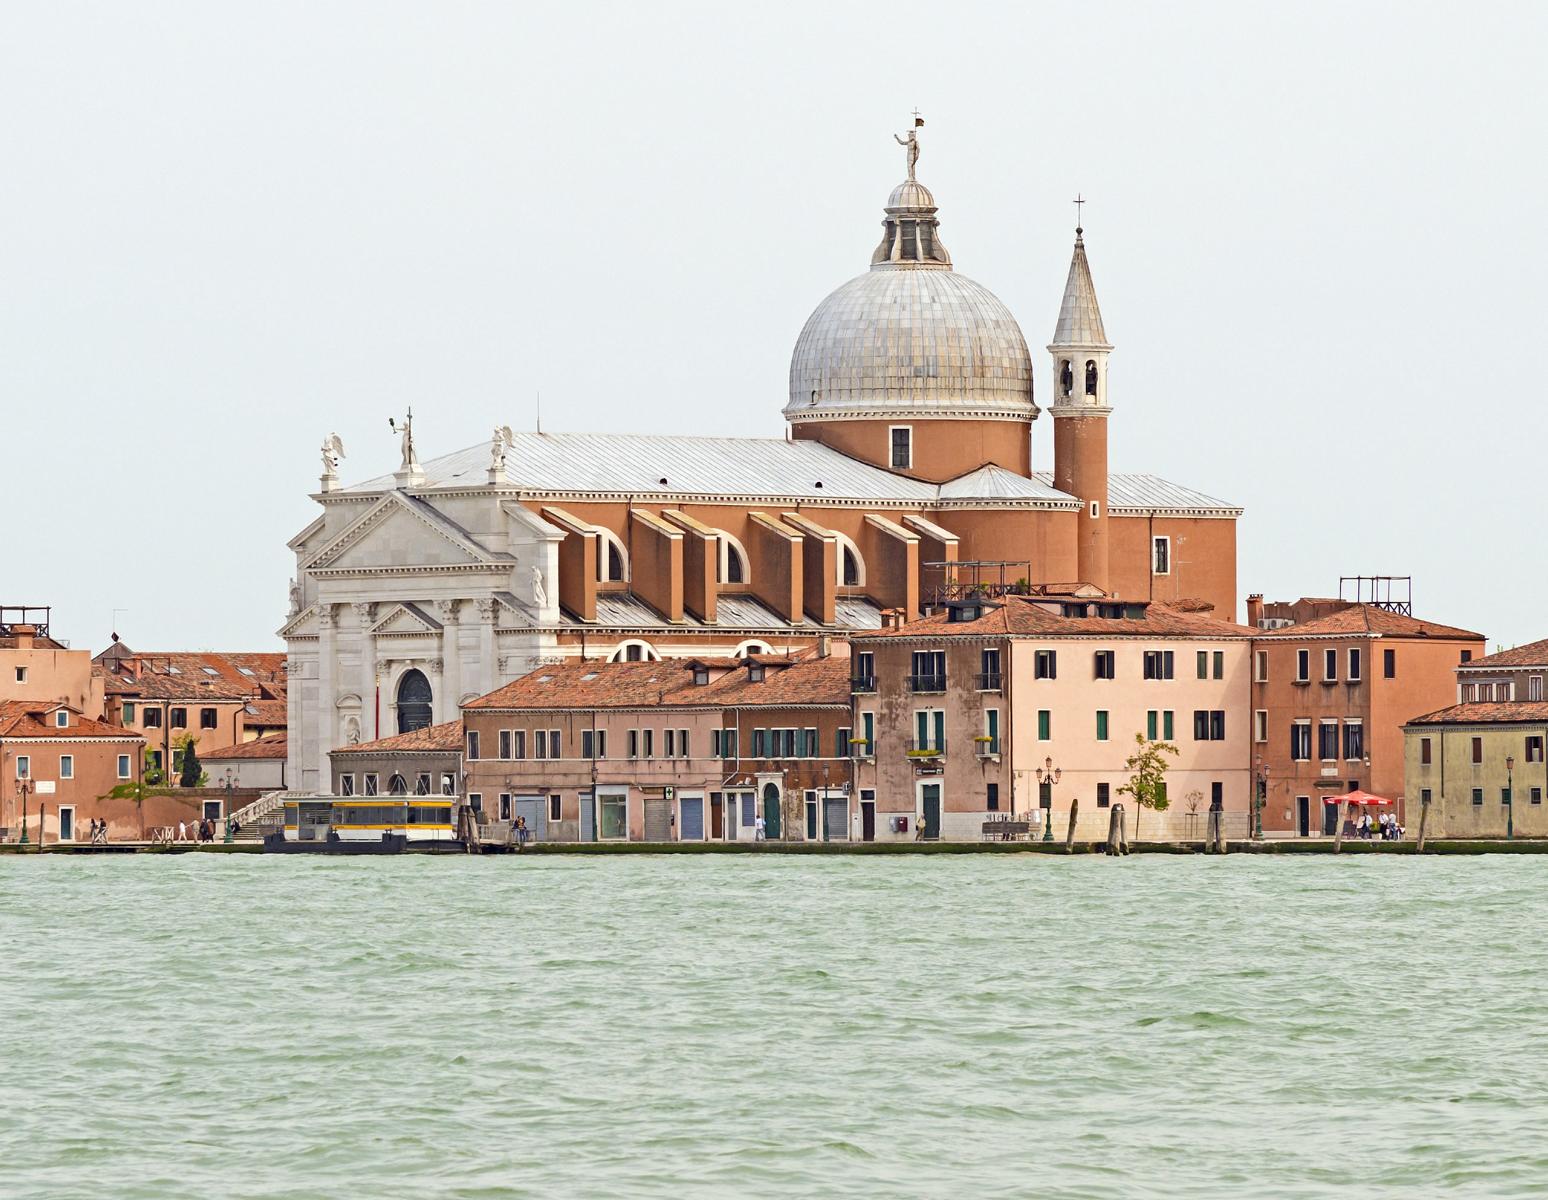 25 Jahre Chorus – der Geburtstag des Vereins, der viele der schönsten Kirchen in Venedig erhält